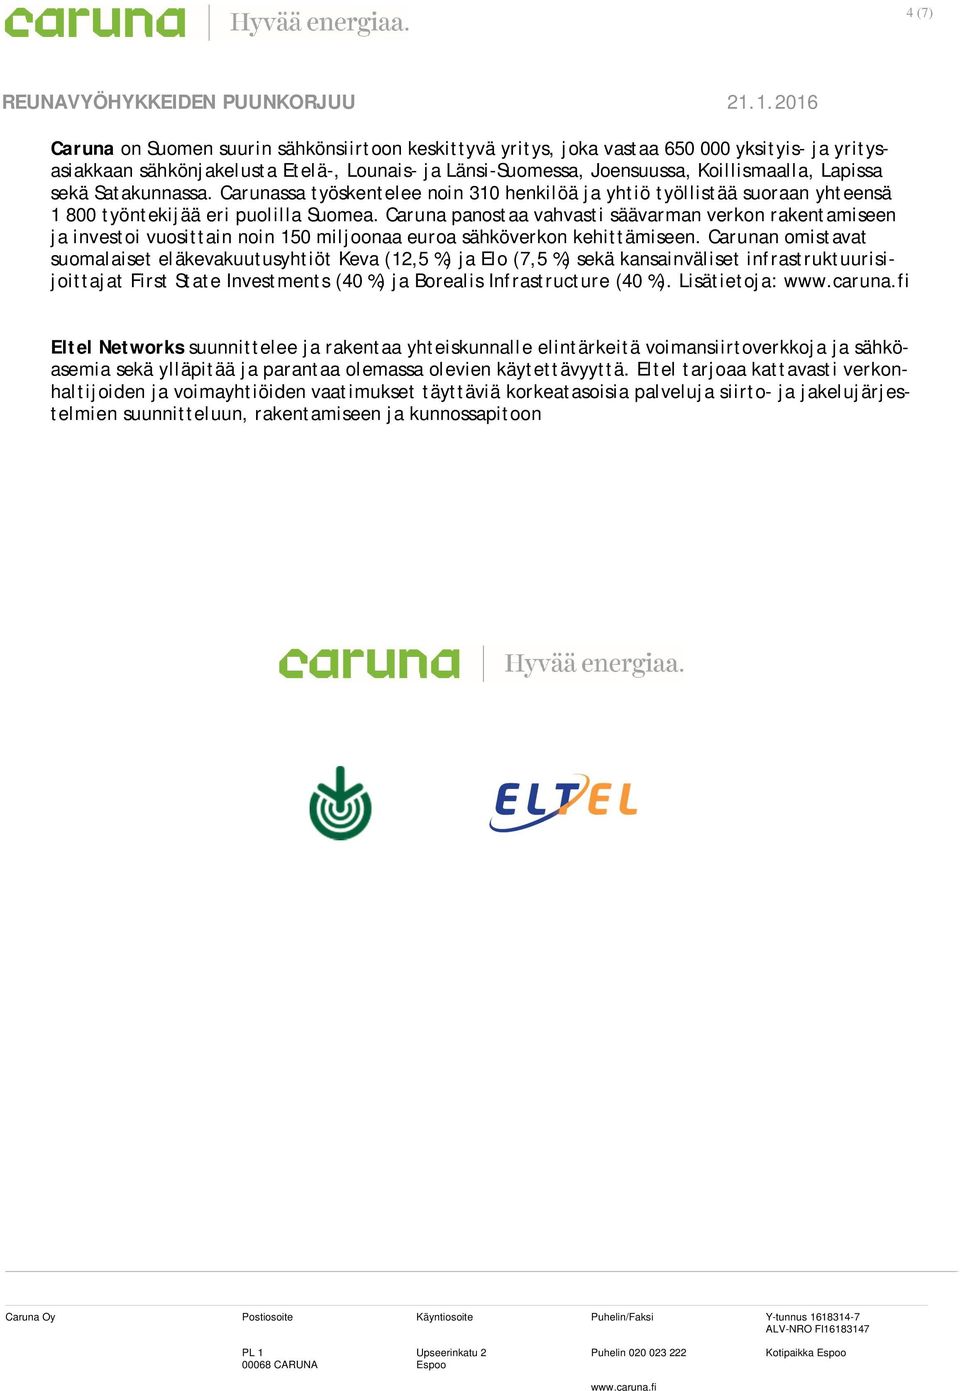 Caruna panostaa vahvasti säävarman verkon rakentamiseen ja investoi vuosittain noin 150 miljoonaa euroa sähköverkon kehittämiseen.